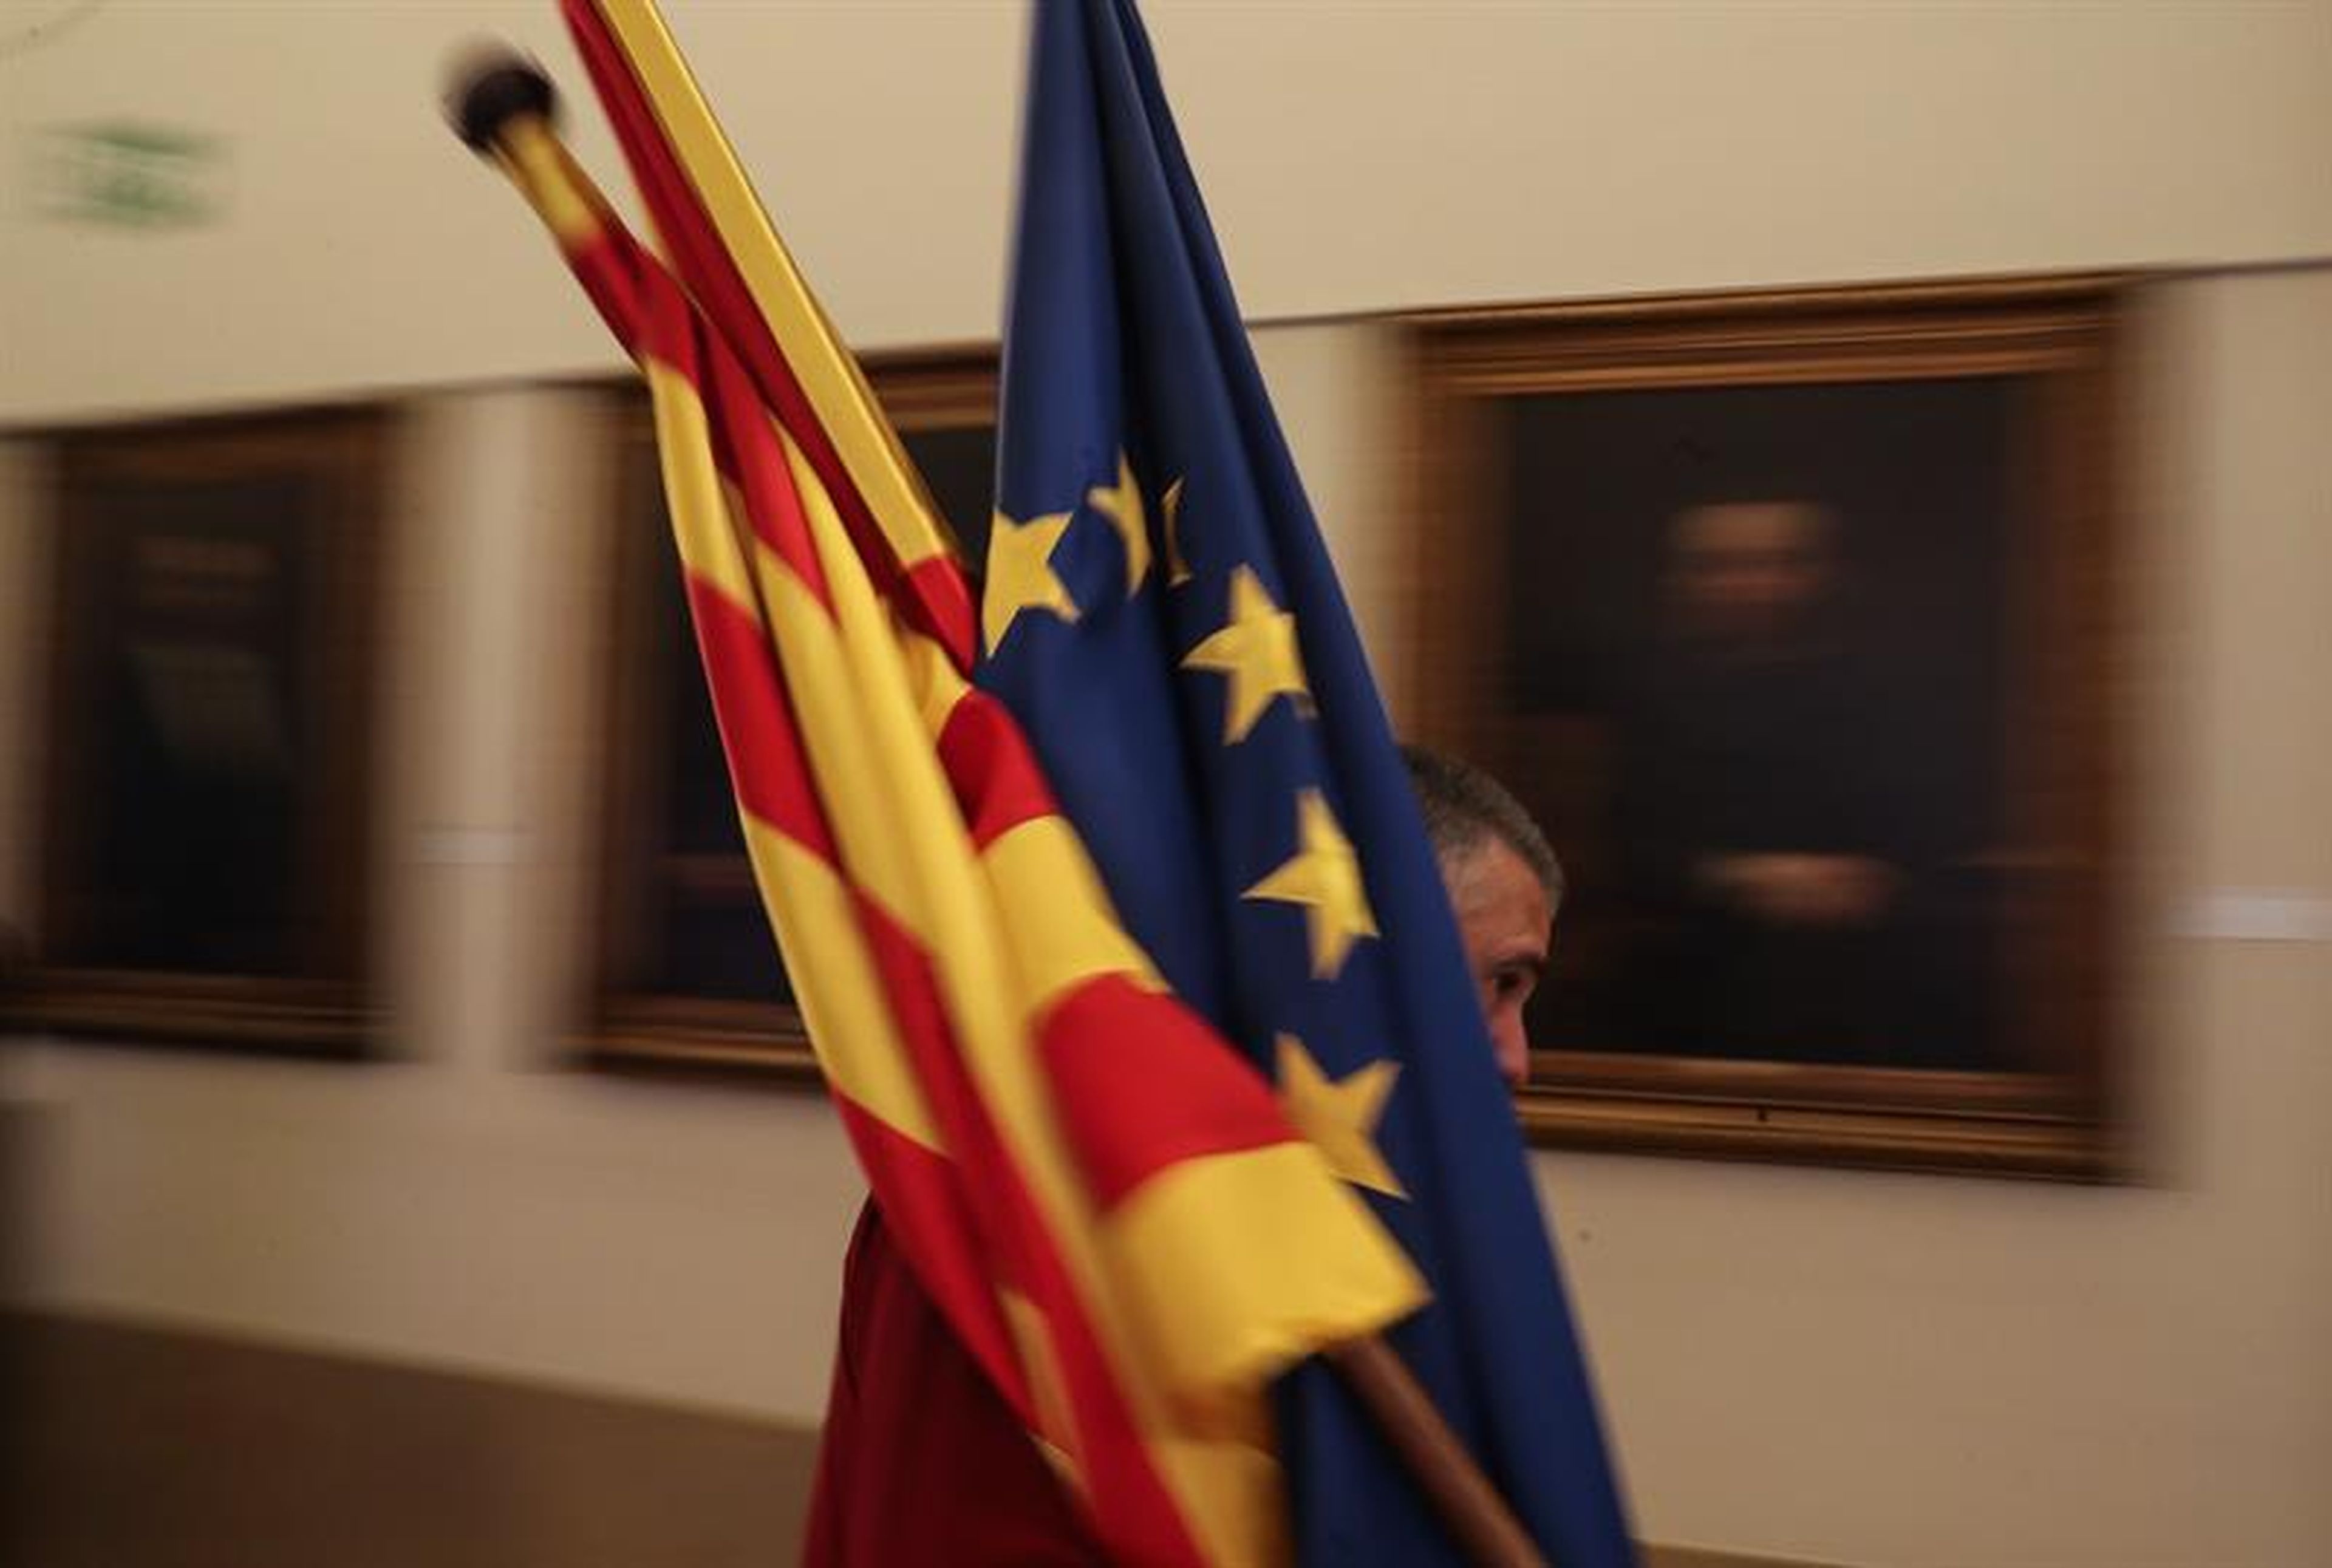 Un trabajador de la sede de la patronal catalana Fomento del Trabajo en Barcelona coloca unas banderas.